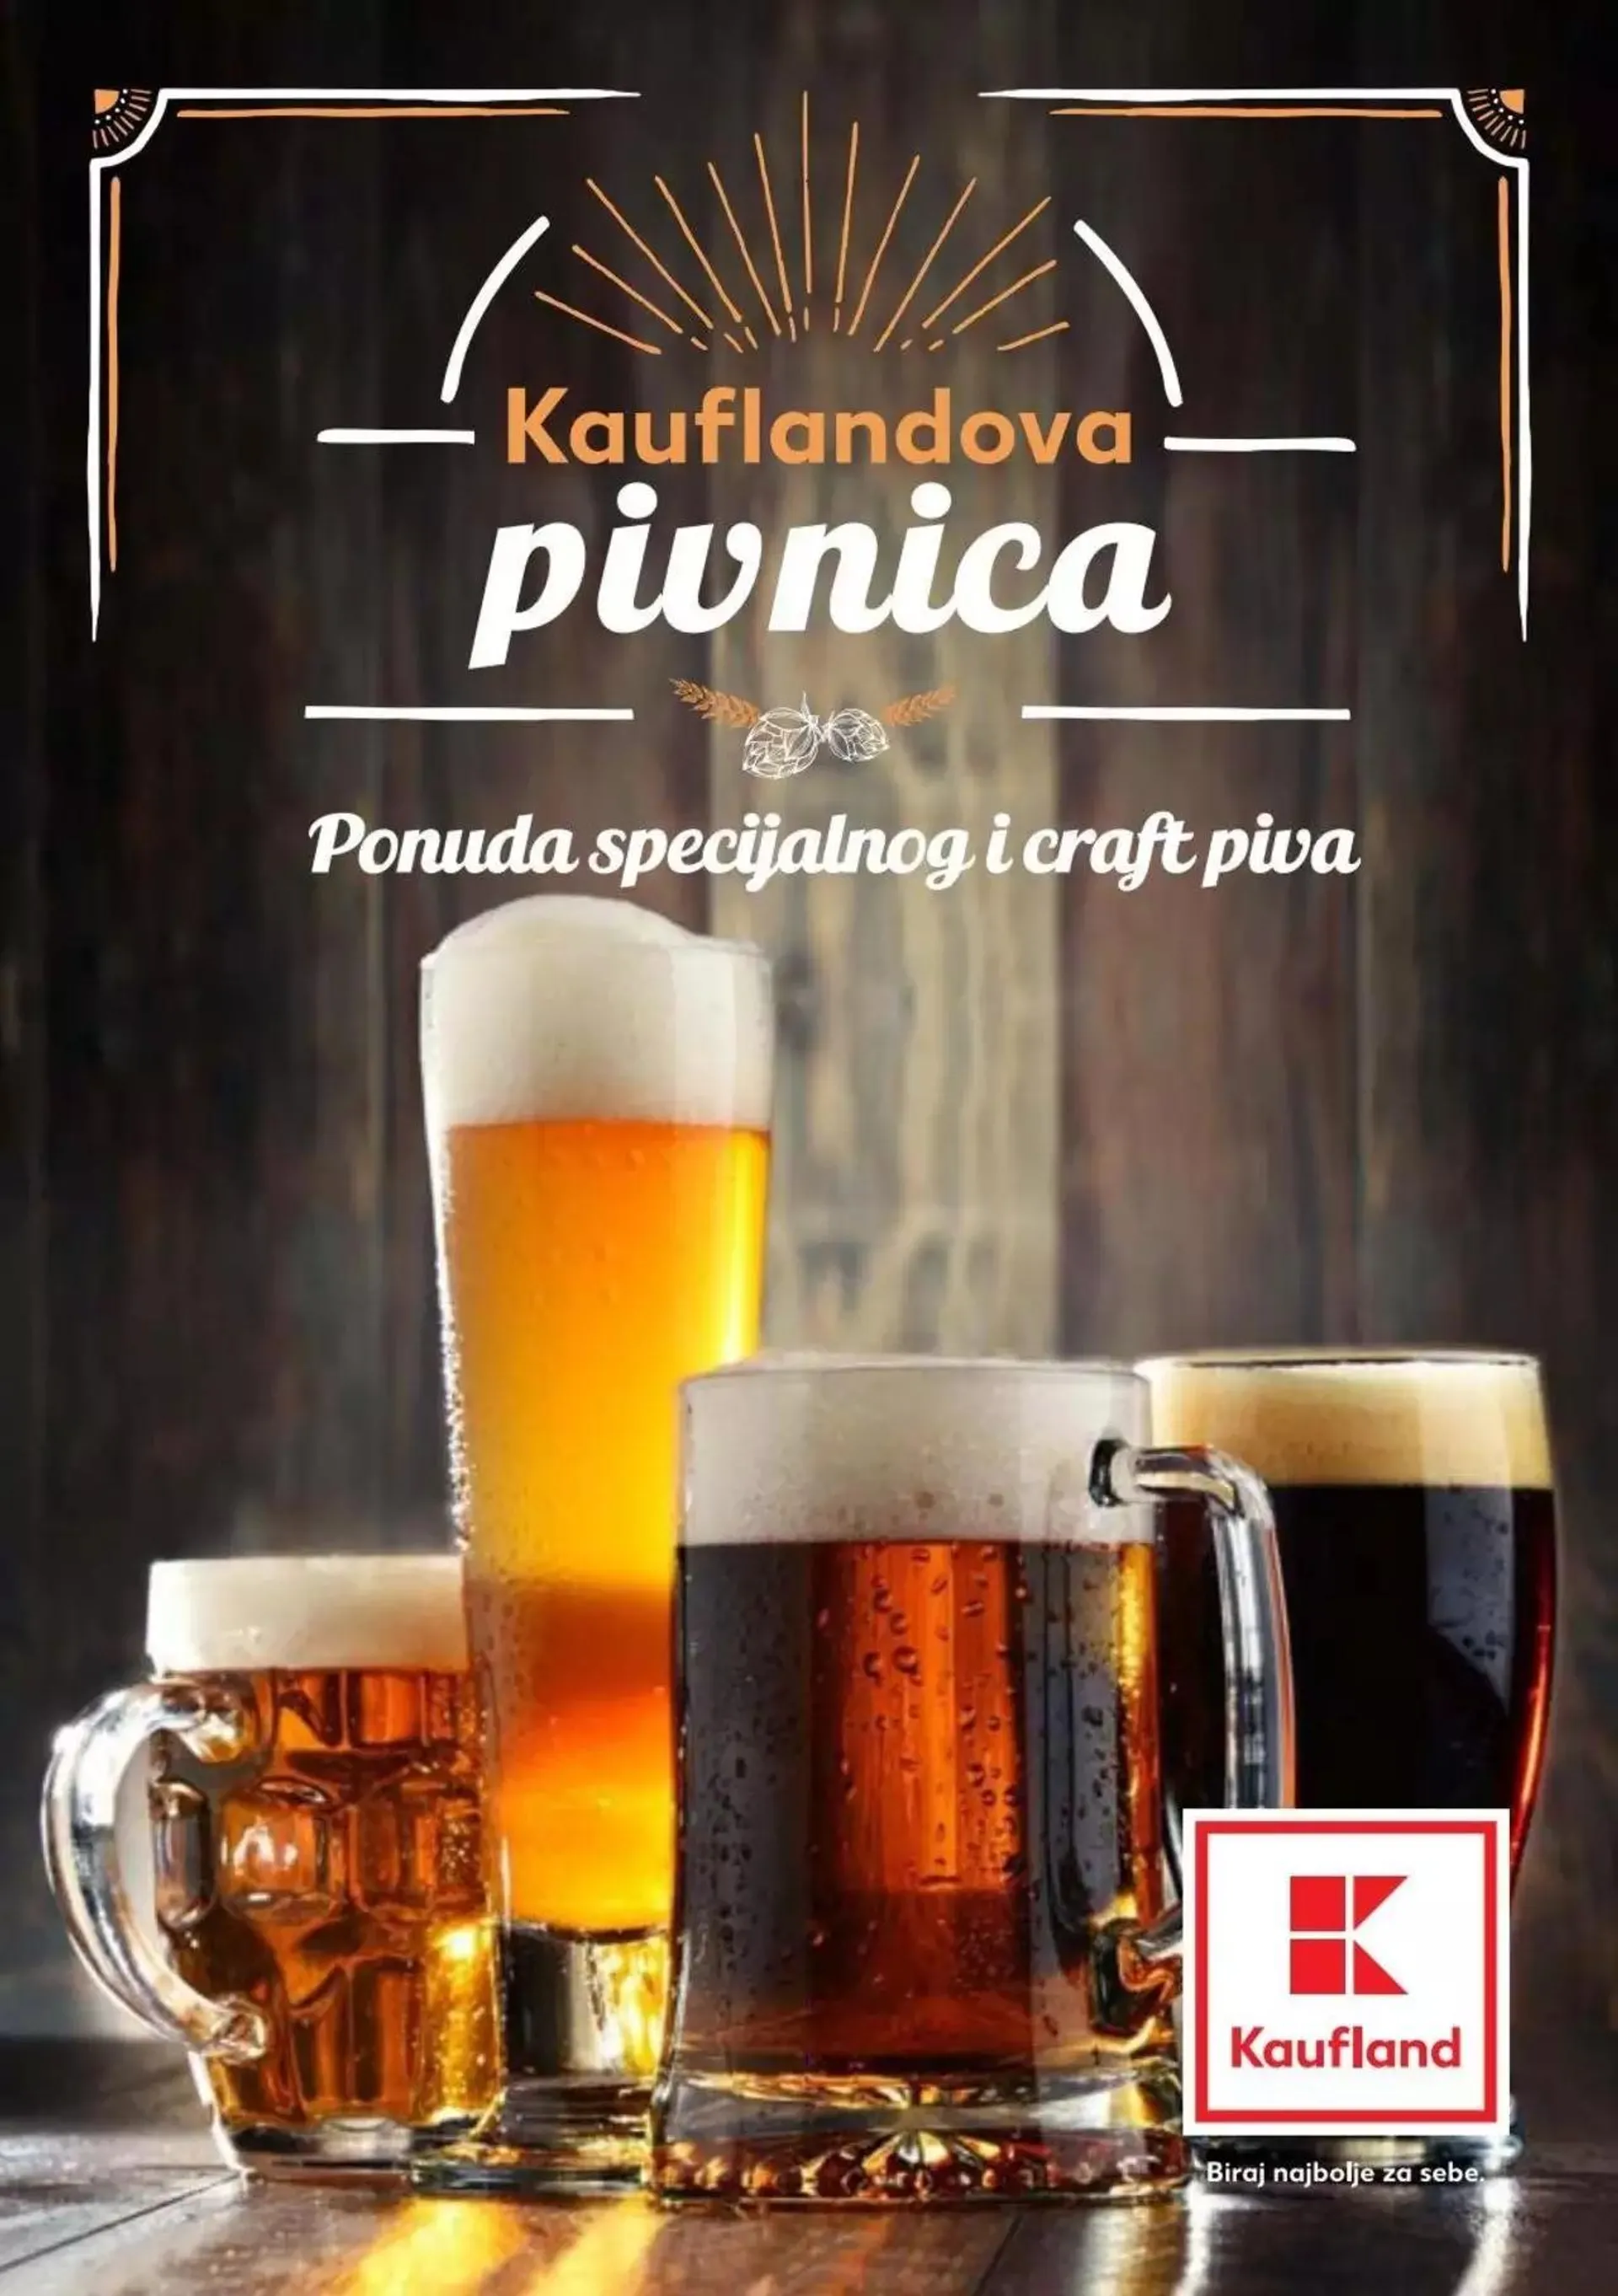 Katalog Specijalnog i craft piva Kaufland - 0